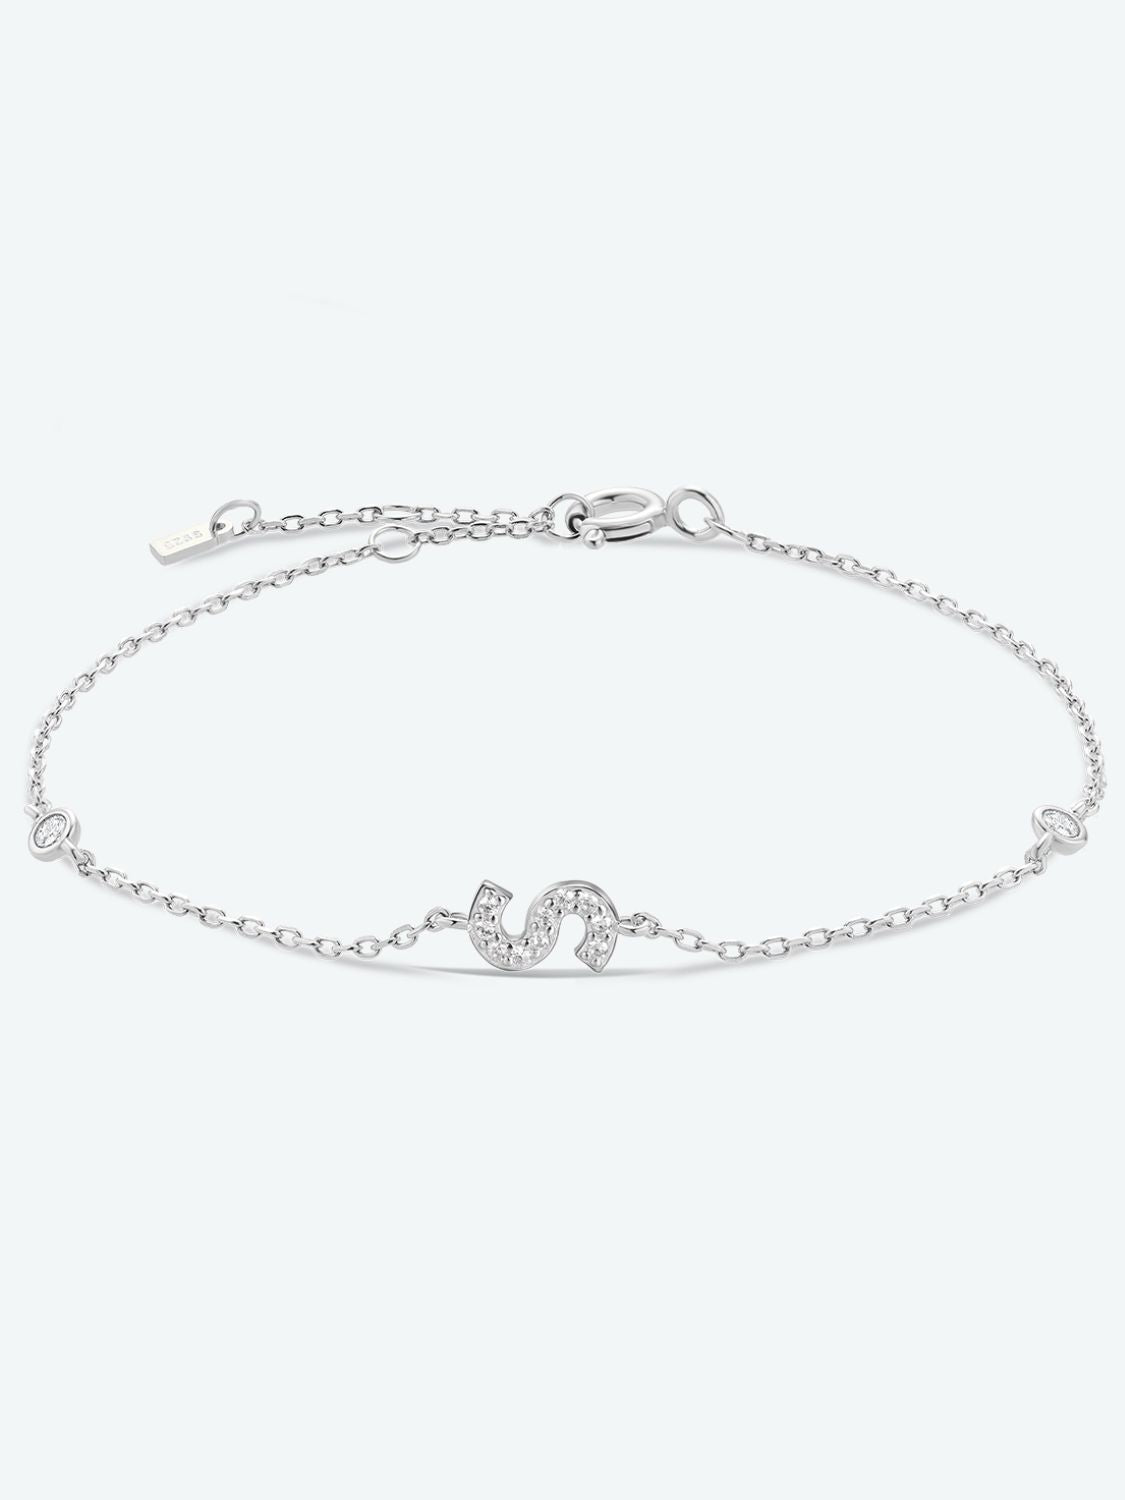 Q To U Zircon 925 Sterling Silver Bracelet - S/Silver / One Size - Women’s Jewelry - Bracelets - 16 - 2024